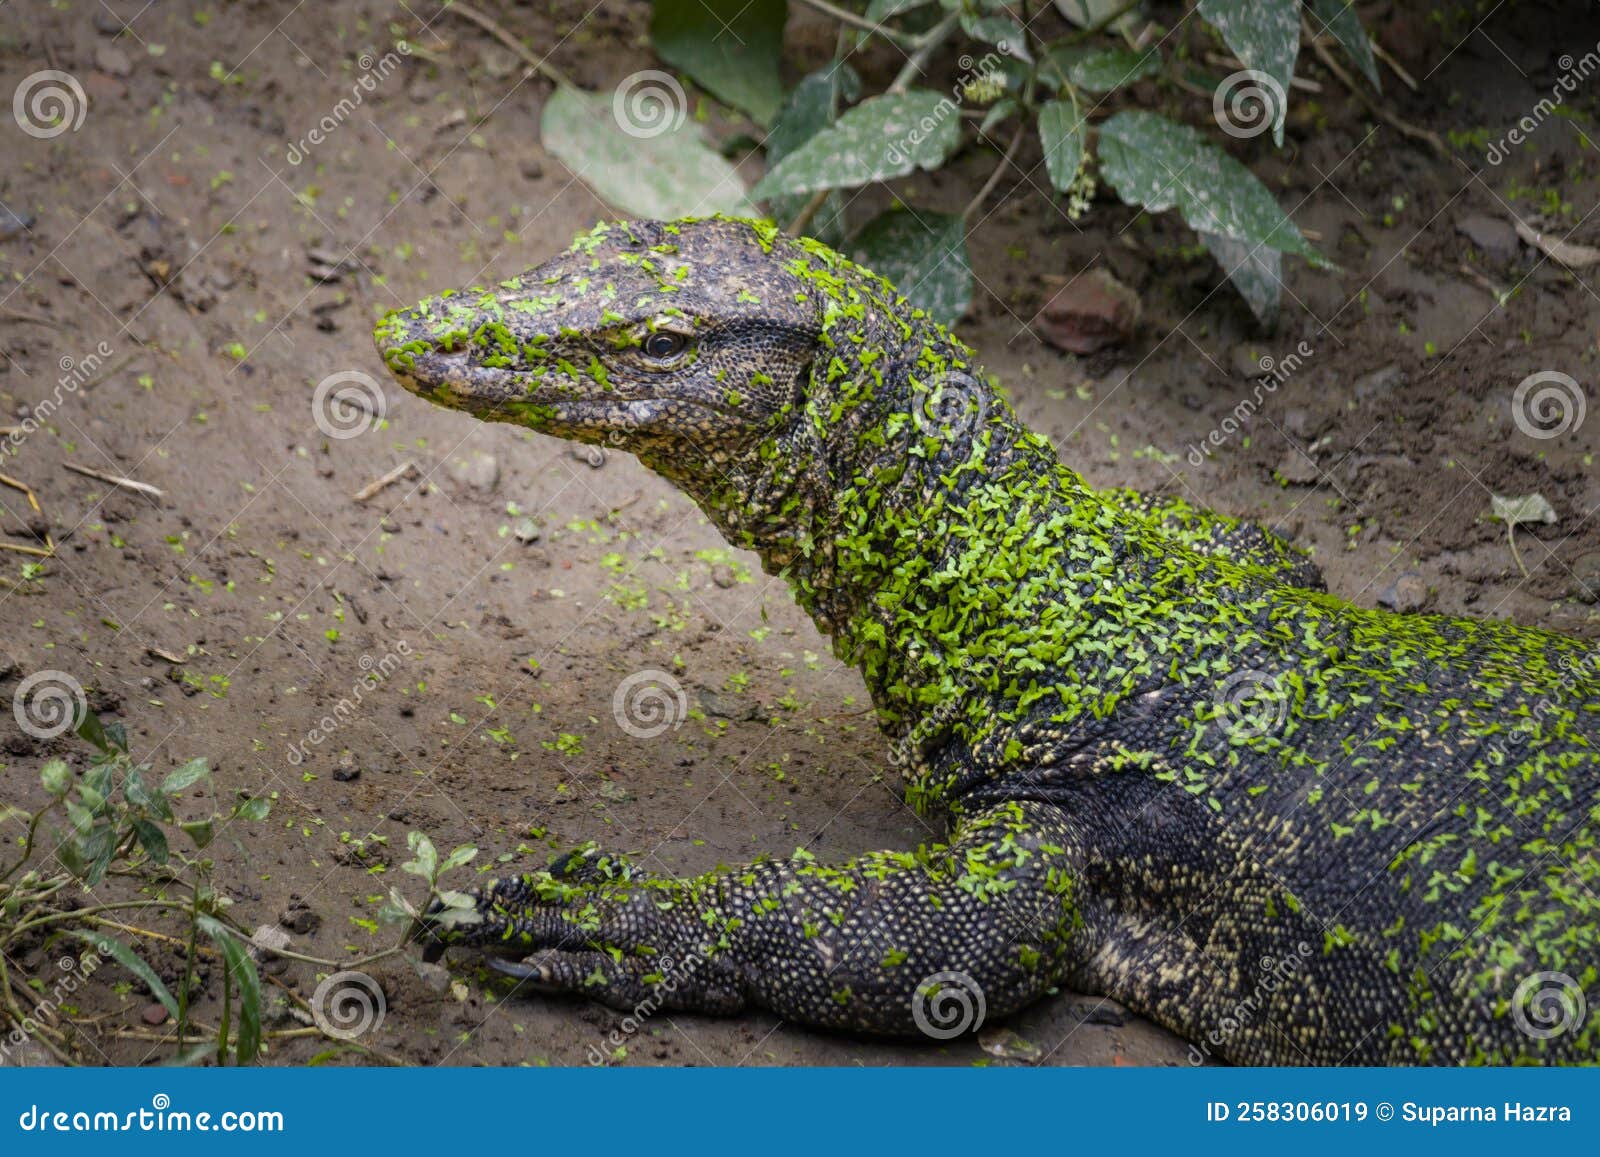 印地安变色蜥蜴 库存图片. 图片 包括有 印第安语, 敌意, 颜色, 蜥蜴, 生态, 印度, 聚会所, 变色蜥蜴 - 50499365